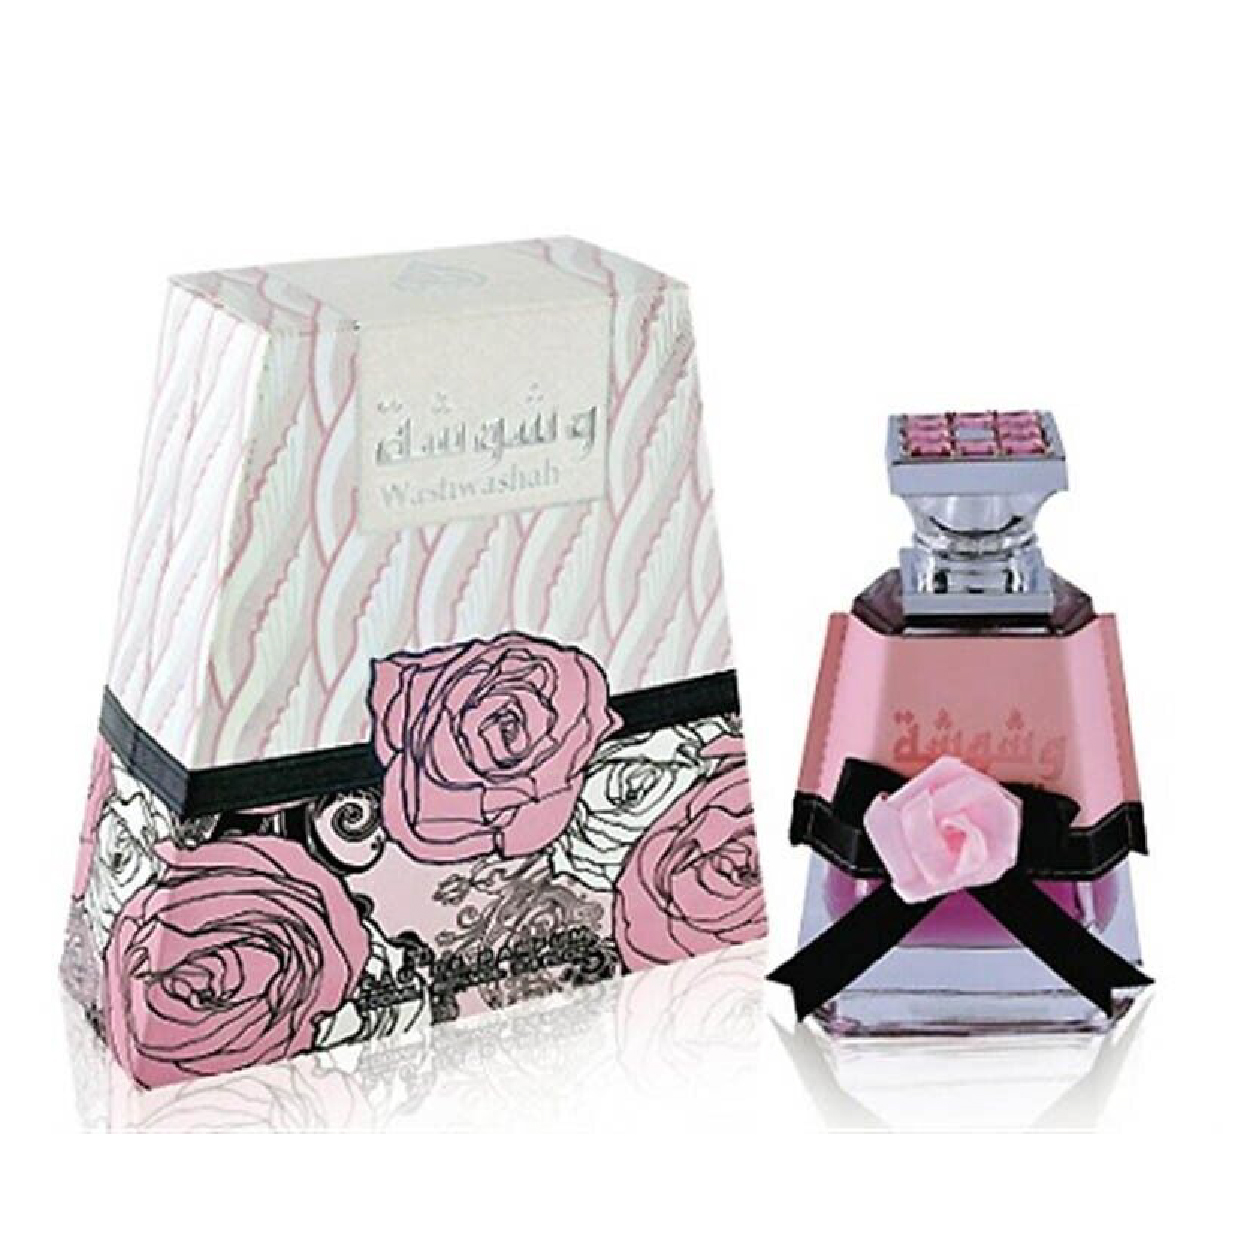 Perfume Washwashah - 50ml x2 - Lattafa